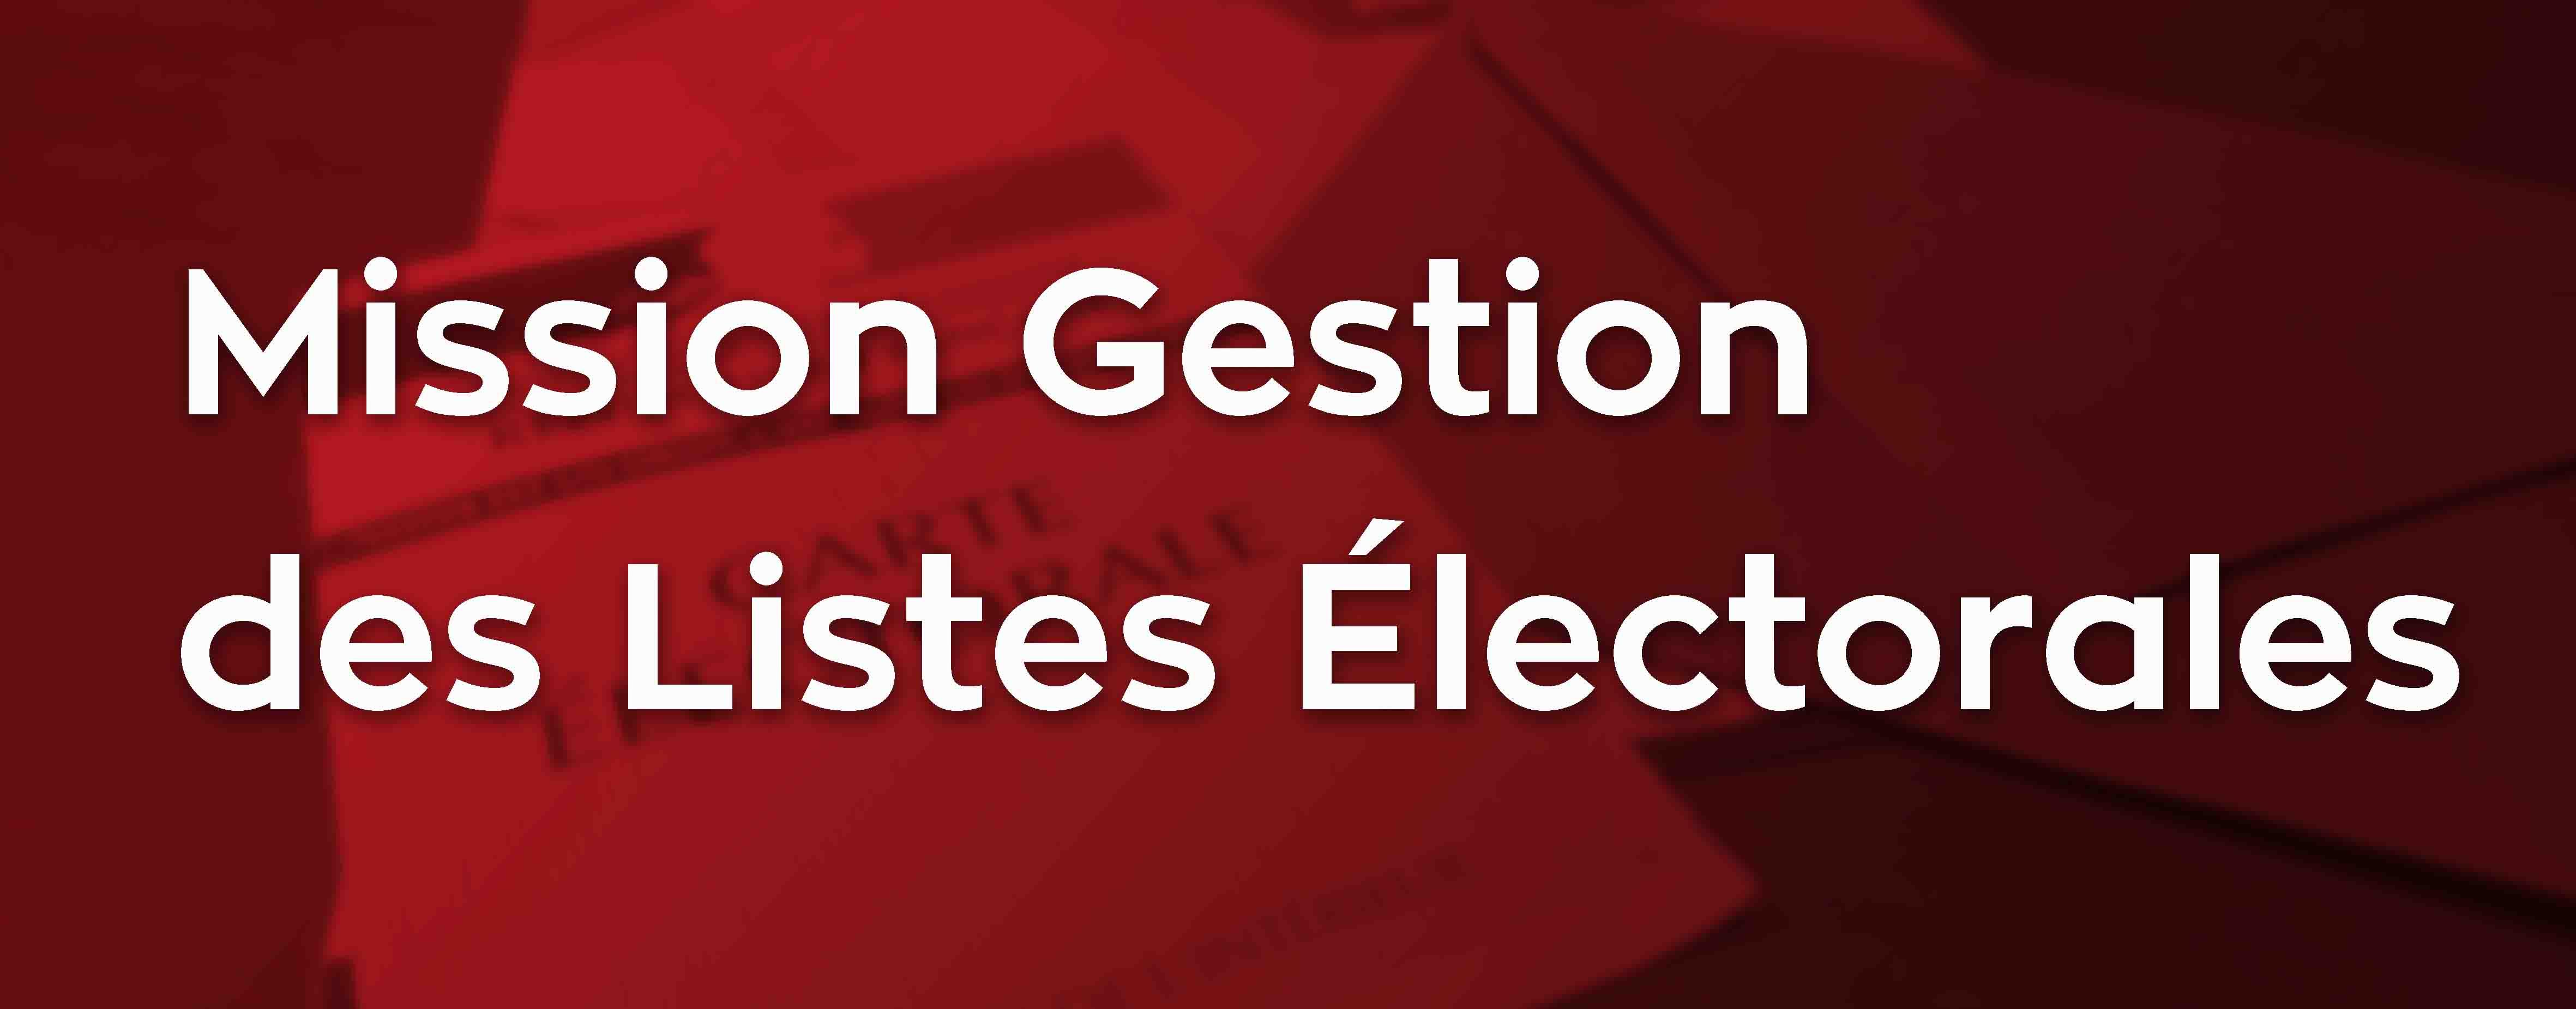 Mission Gestion des Listes Electorales